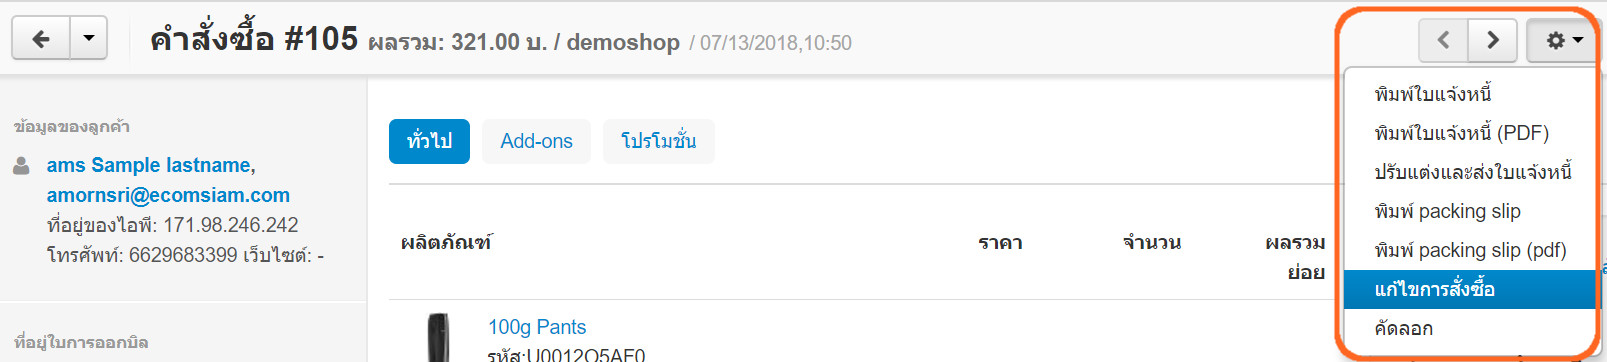 เว็บไซต์สำเร็จรูปไทย - คู่มือร้านออนไลน์ - สั่งซื้อ - เรียกดูใบสั่งซื้อ แก้ไขรายละเอียดสั่งซื้อ